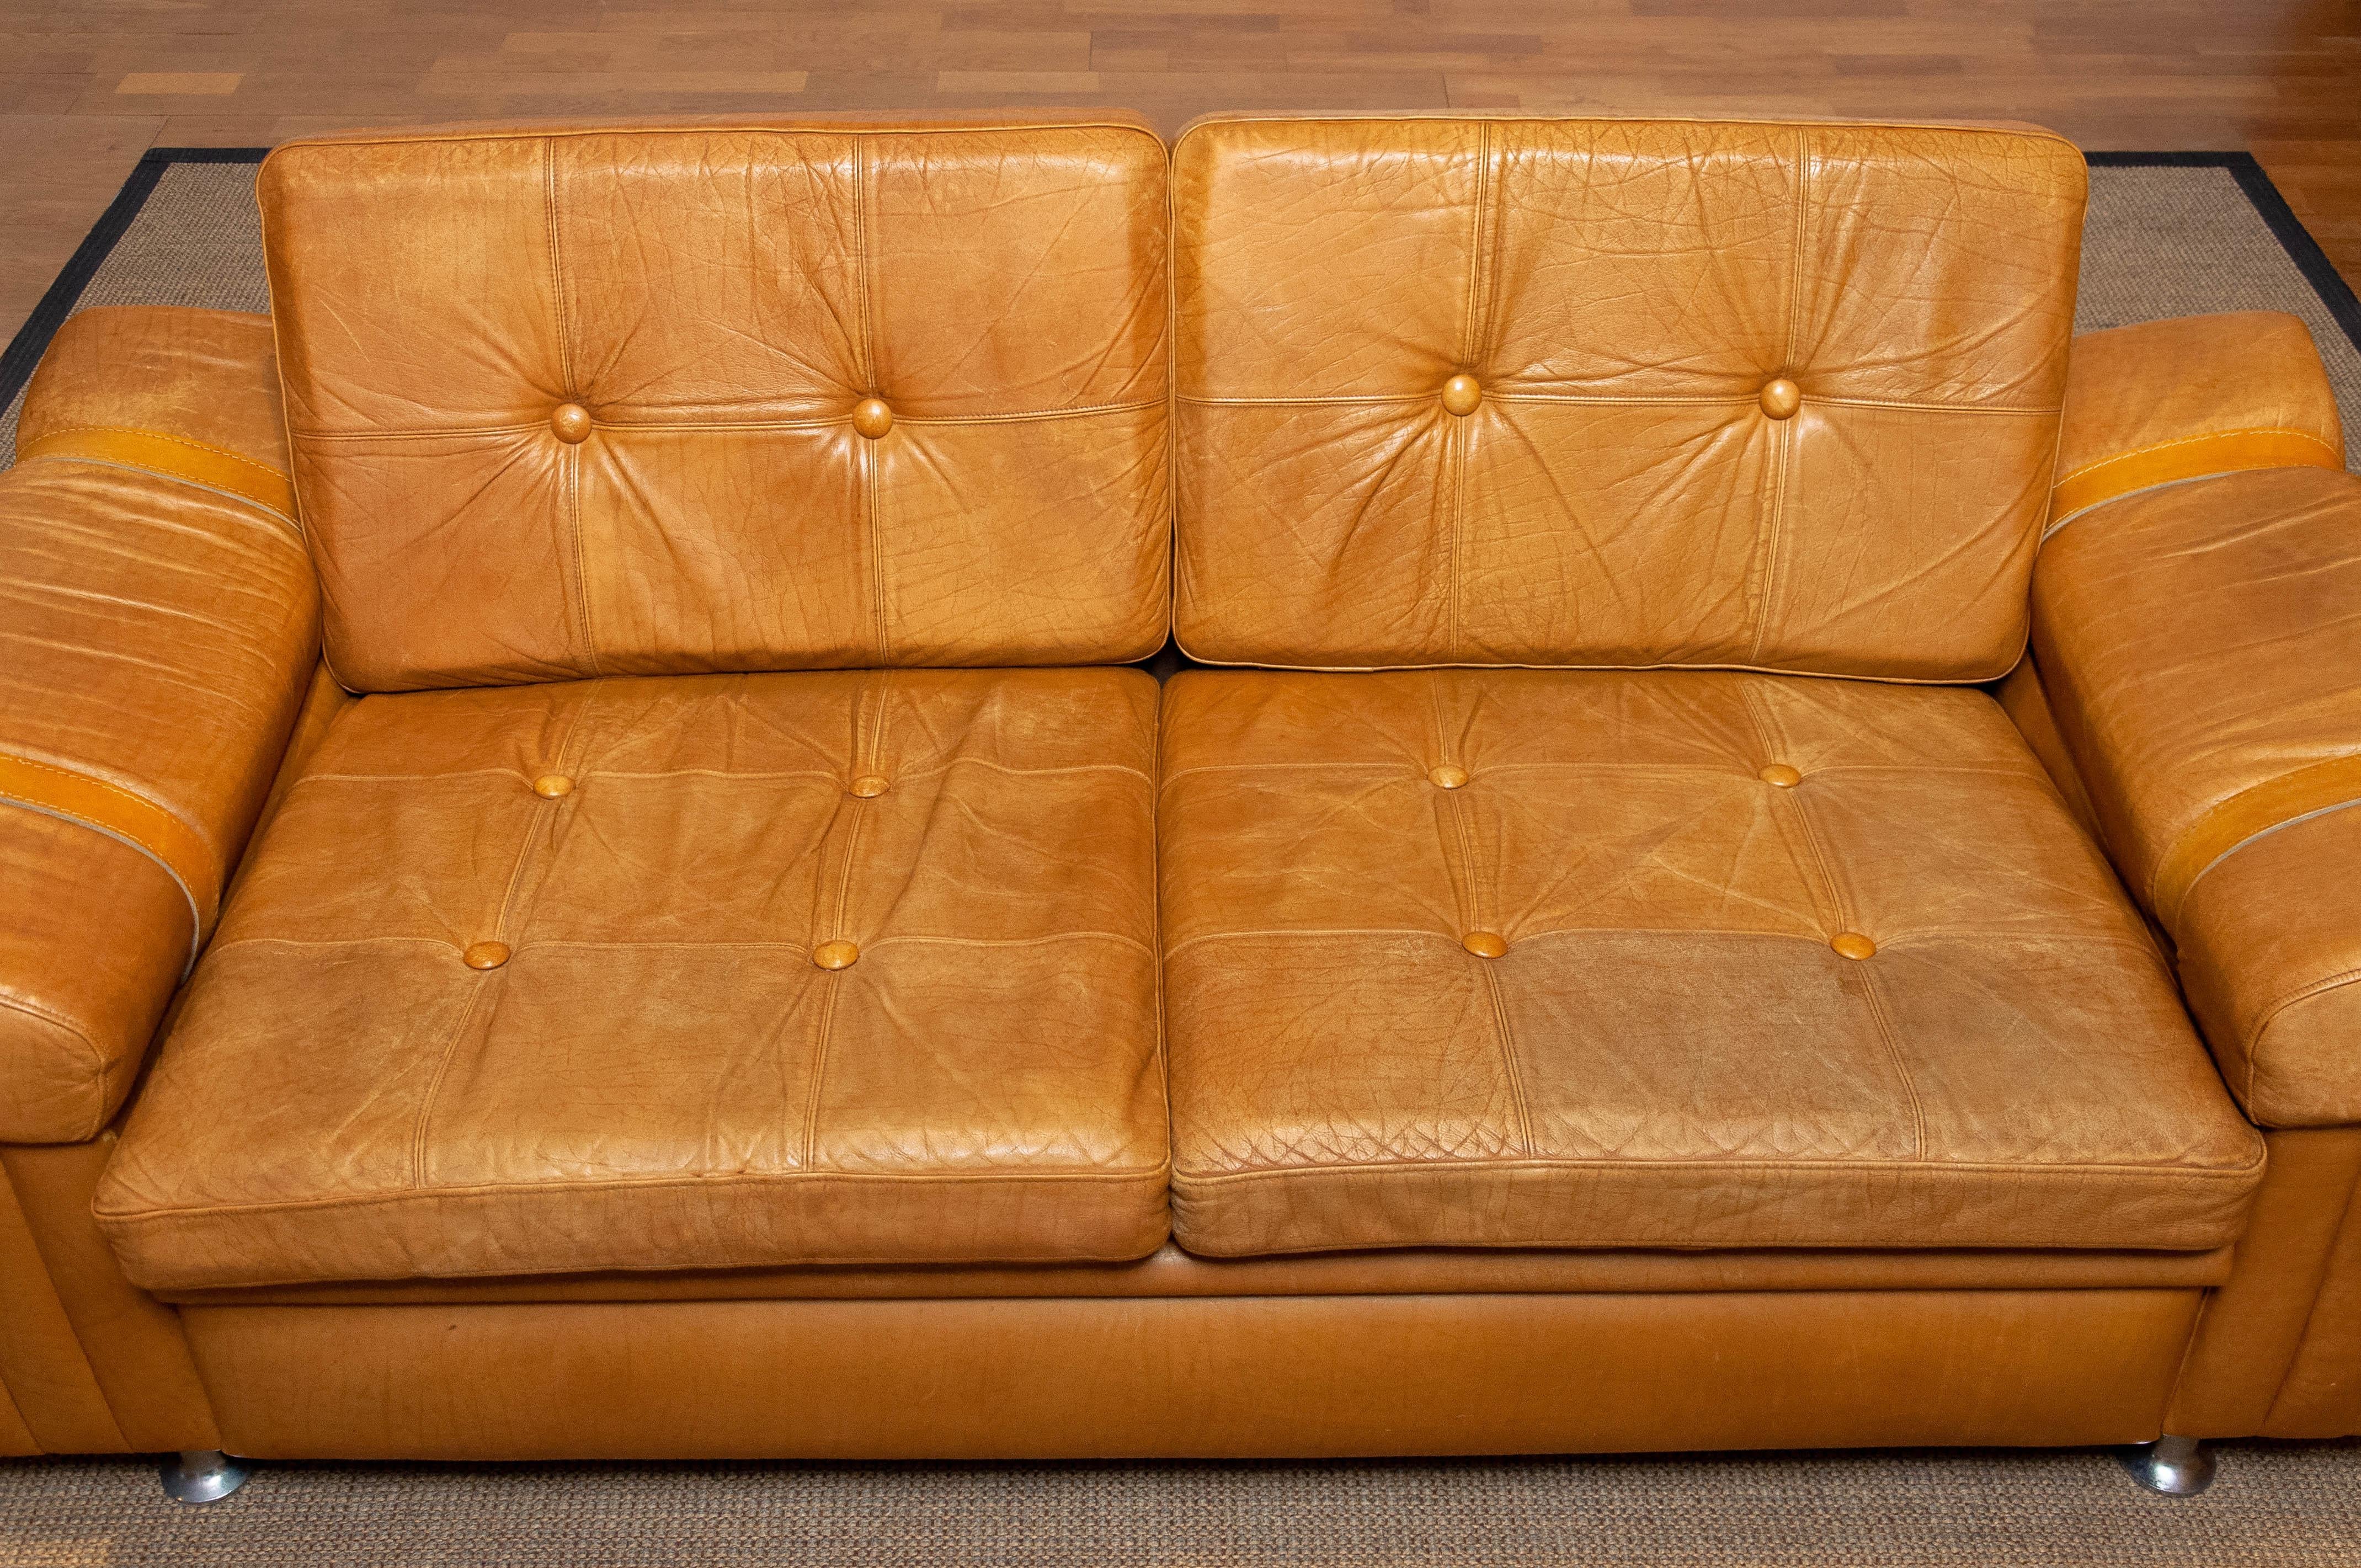 Magnifique canapé deux places de style brutaliste en cuir de couleur camel. Ce canapé scandinave donne l'impression, de par les matériaux utilisés, le design et la qualité, d'être un produit suédois de la société Norells AB, mais nous n'avons pas